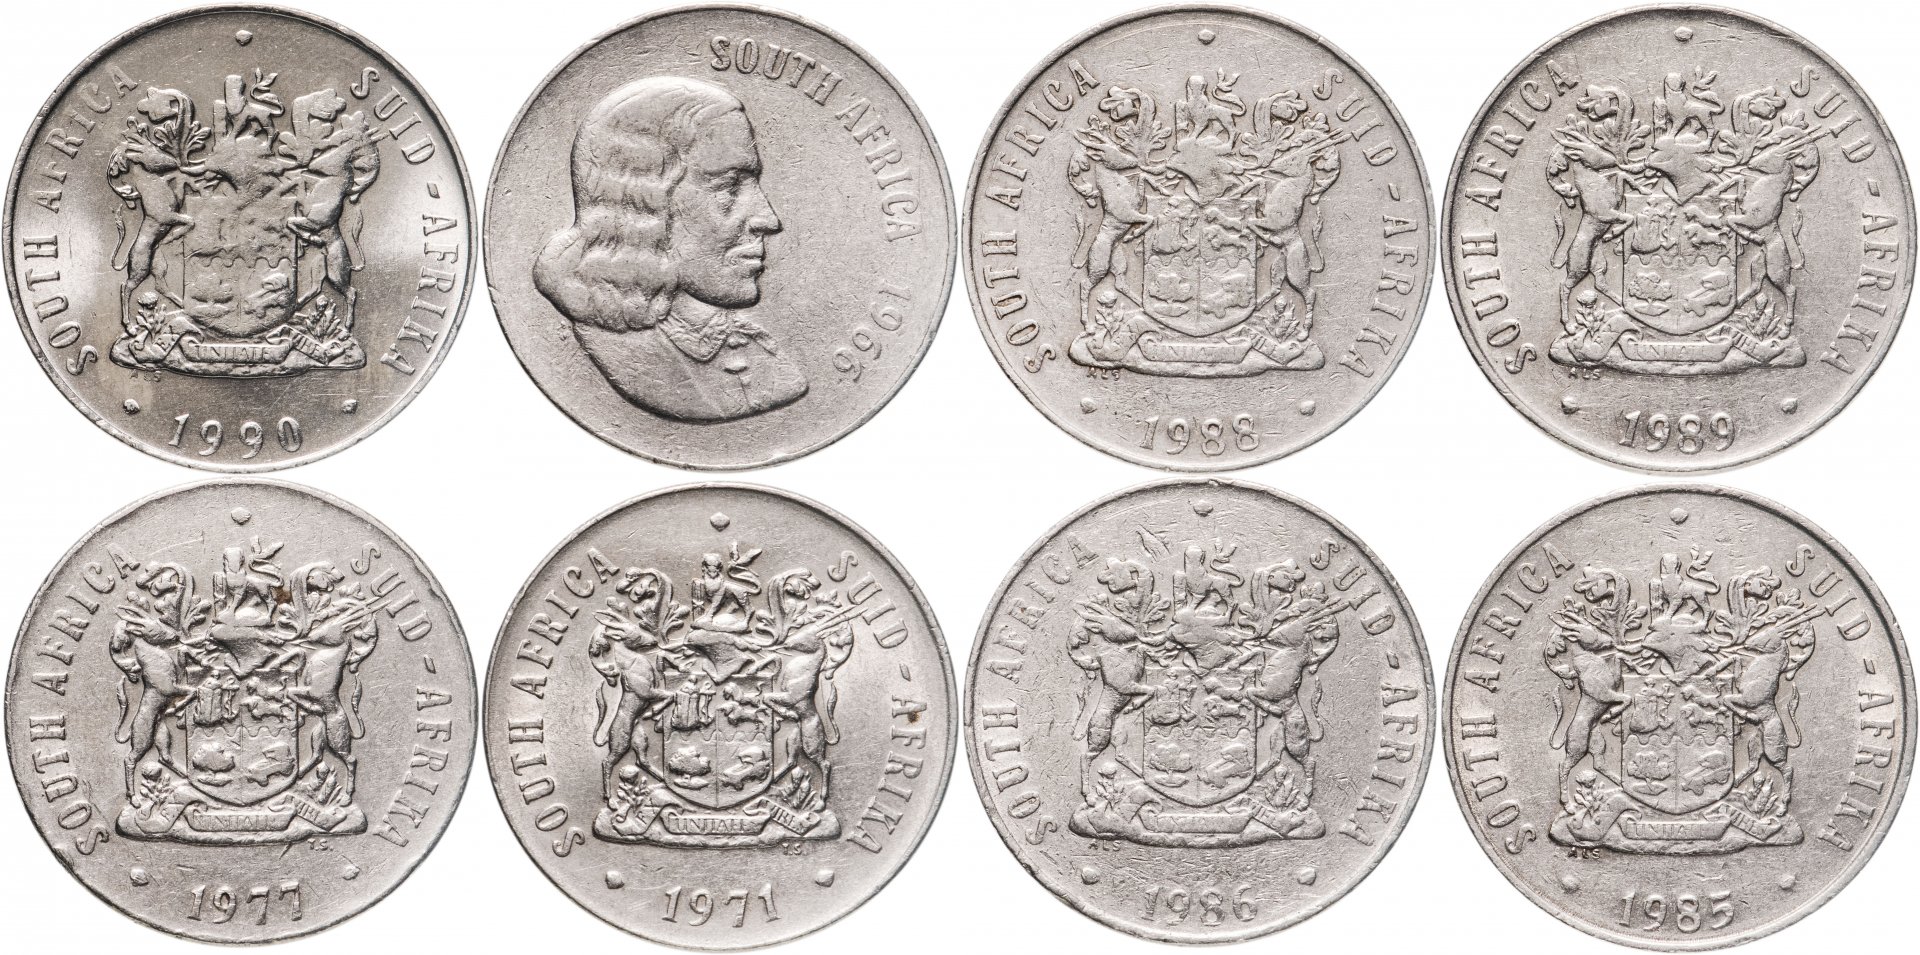 8 монет в операции. Монета 8 дукатов. Российская Империя монеты 1966. Frank c1/2 монета 1966. Подвеска 8 монет 40 см, z178-2.